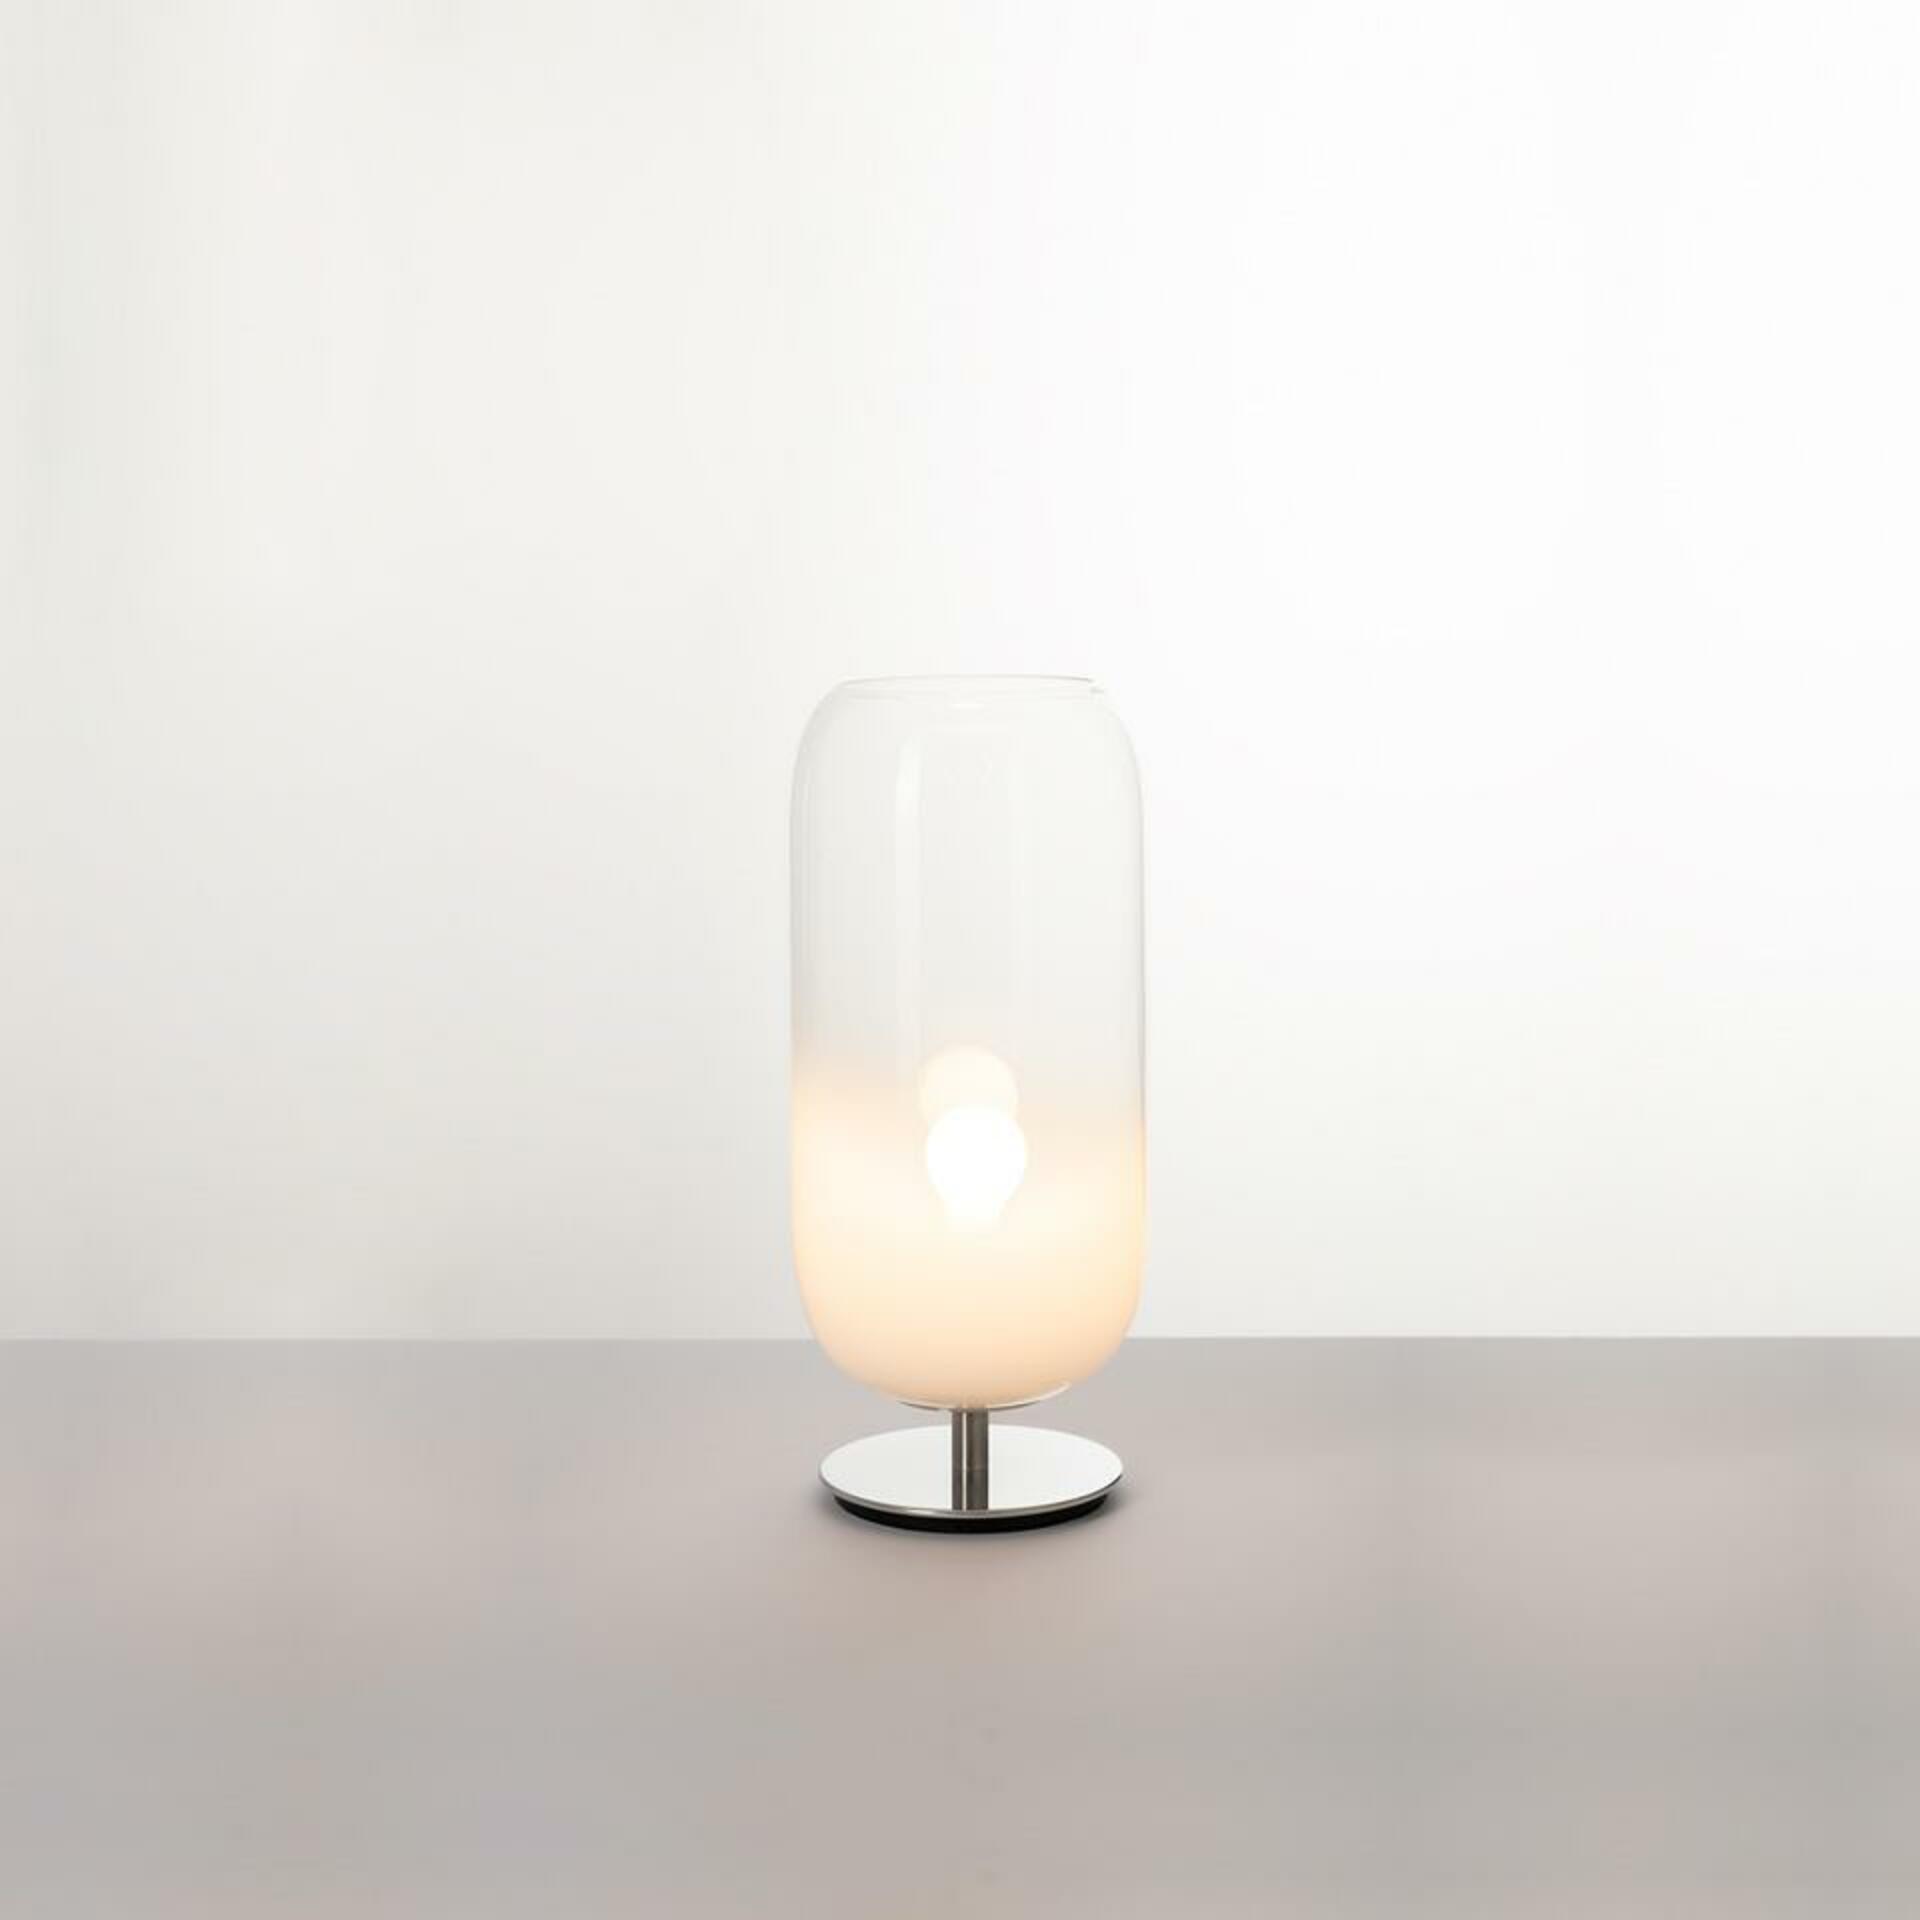 Artemide Gople Mini stolní lampa - bílá 1409020A